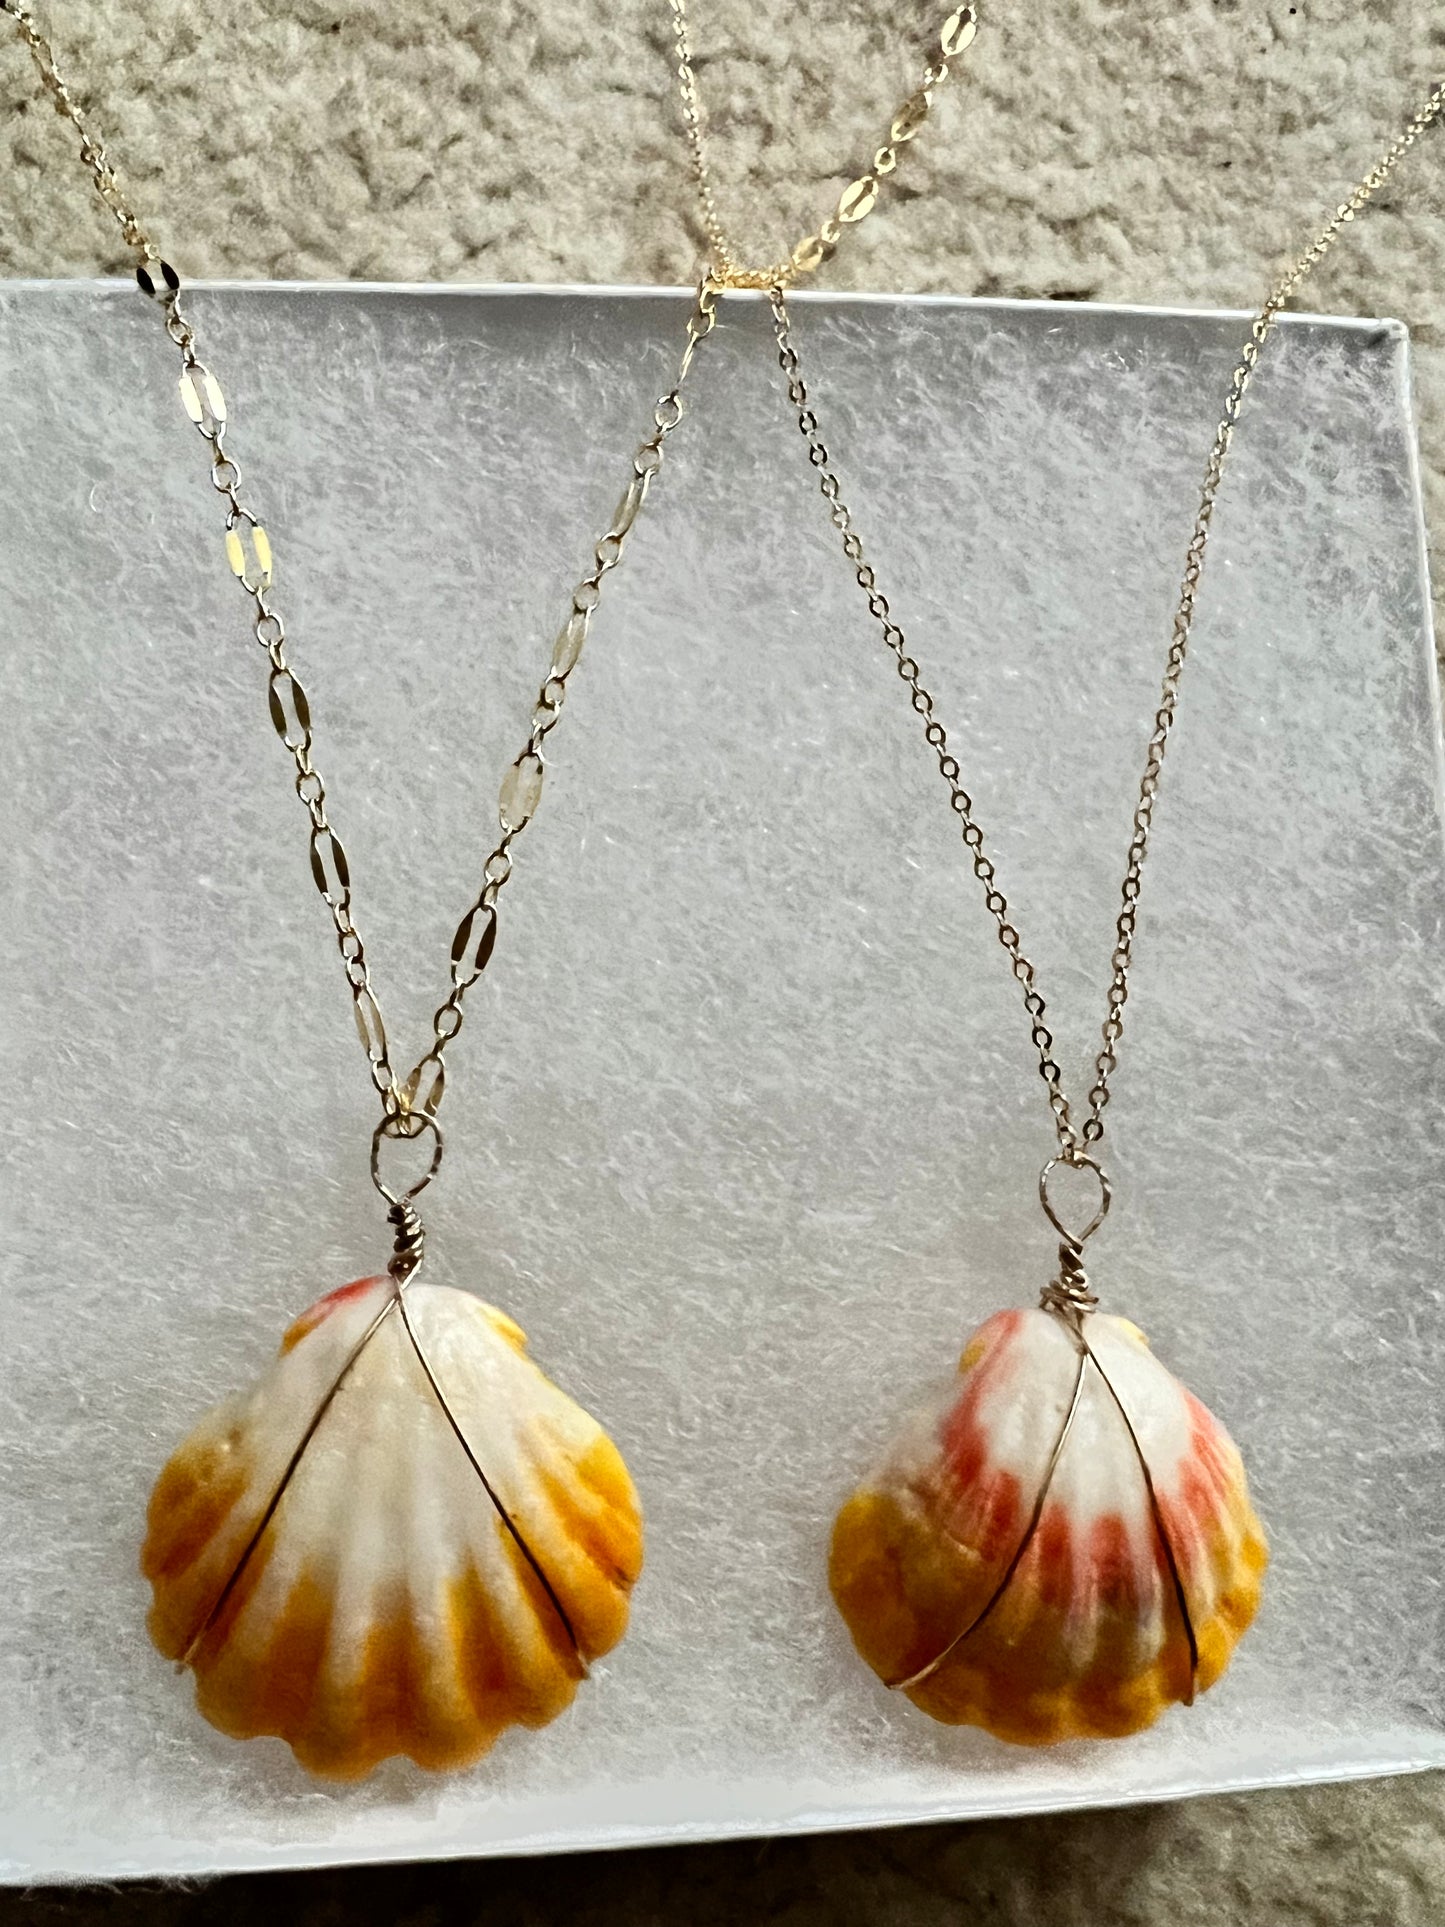 Sunrise shell necklaces